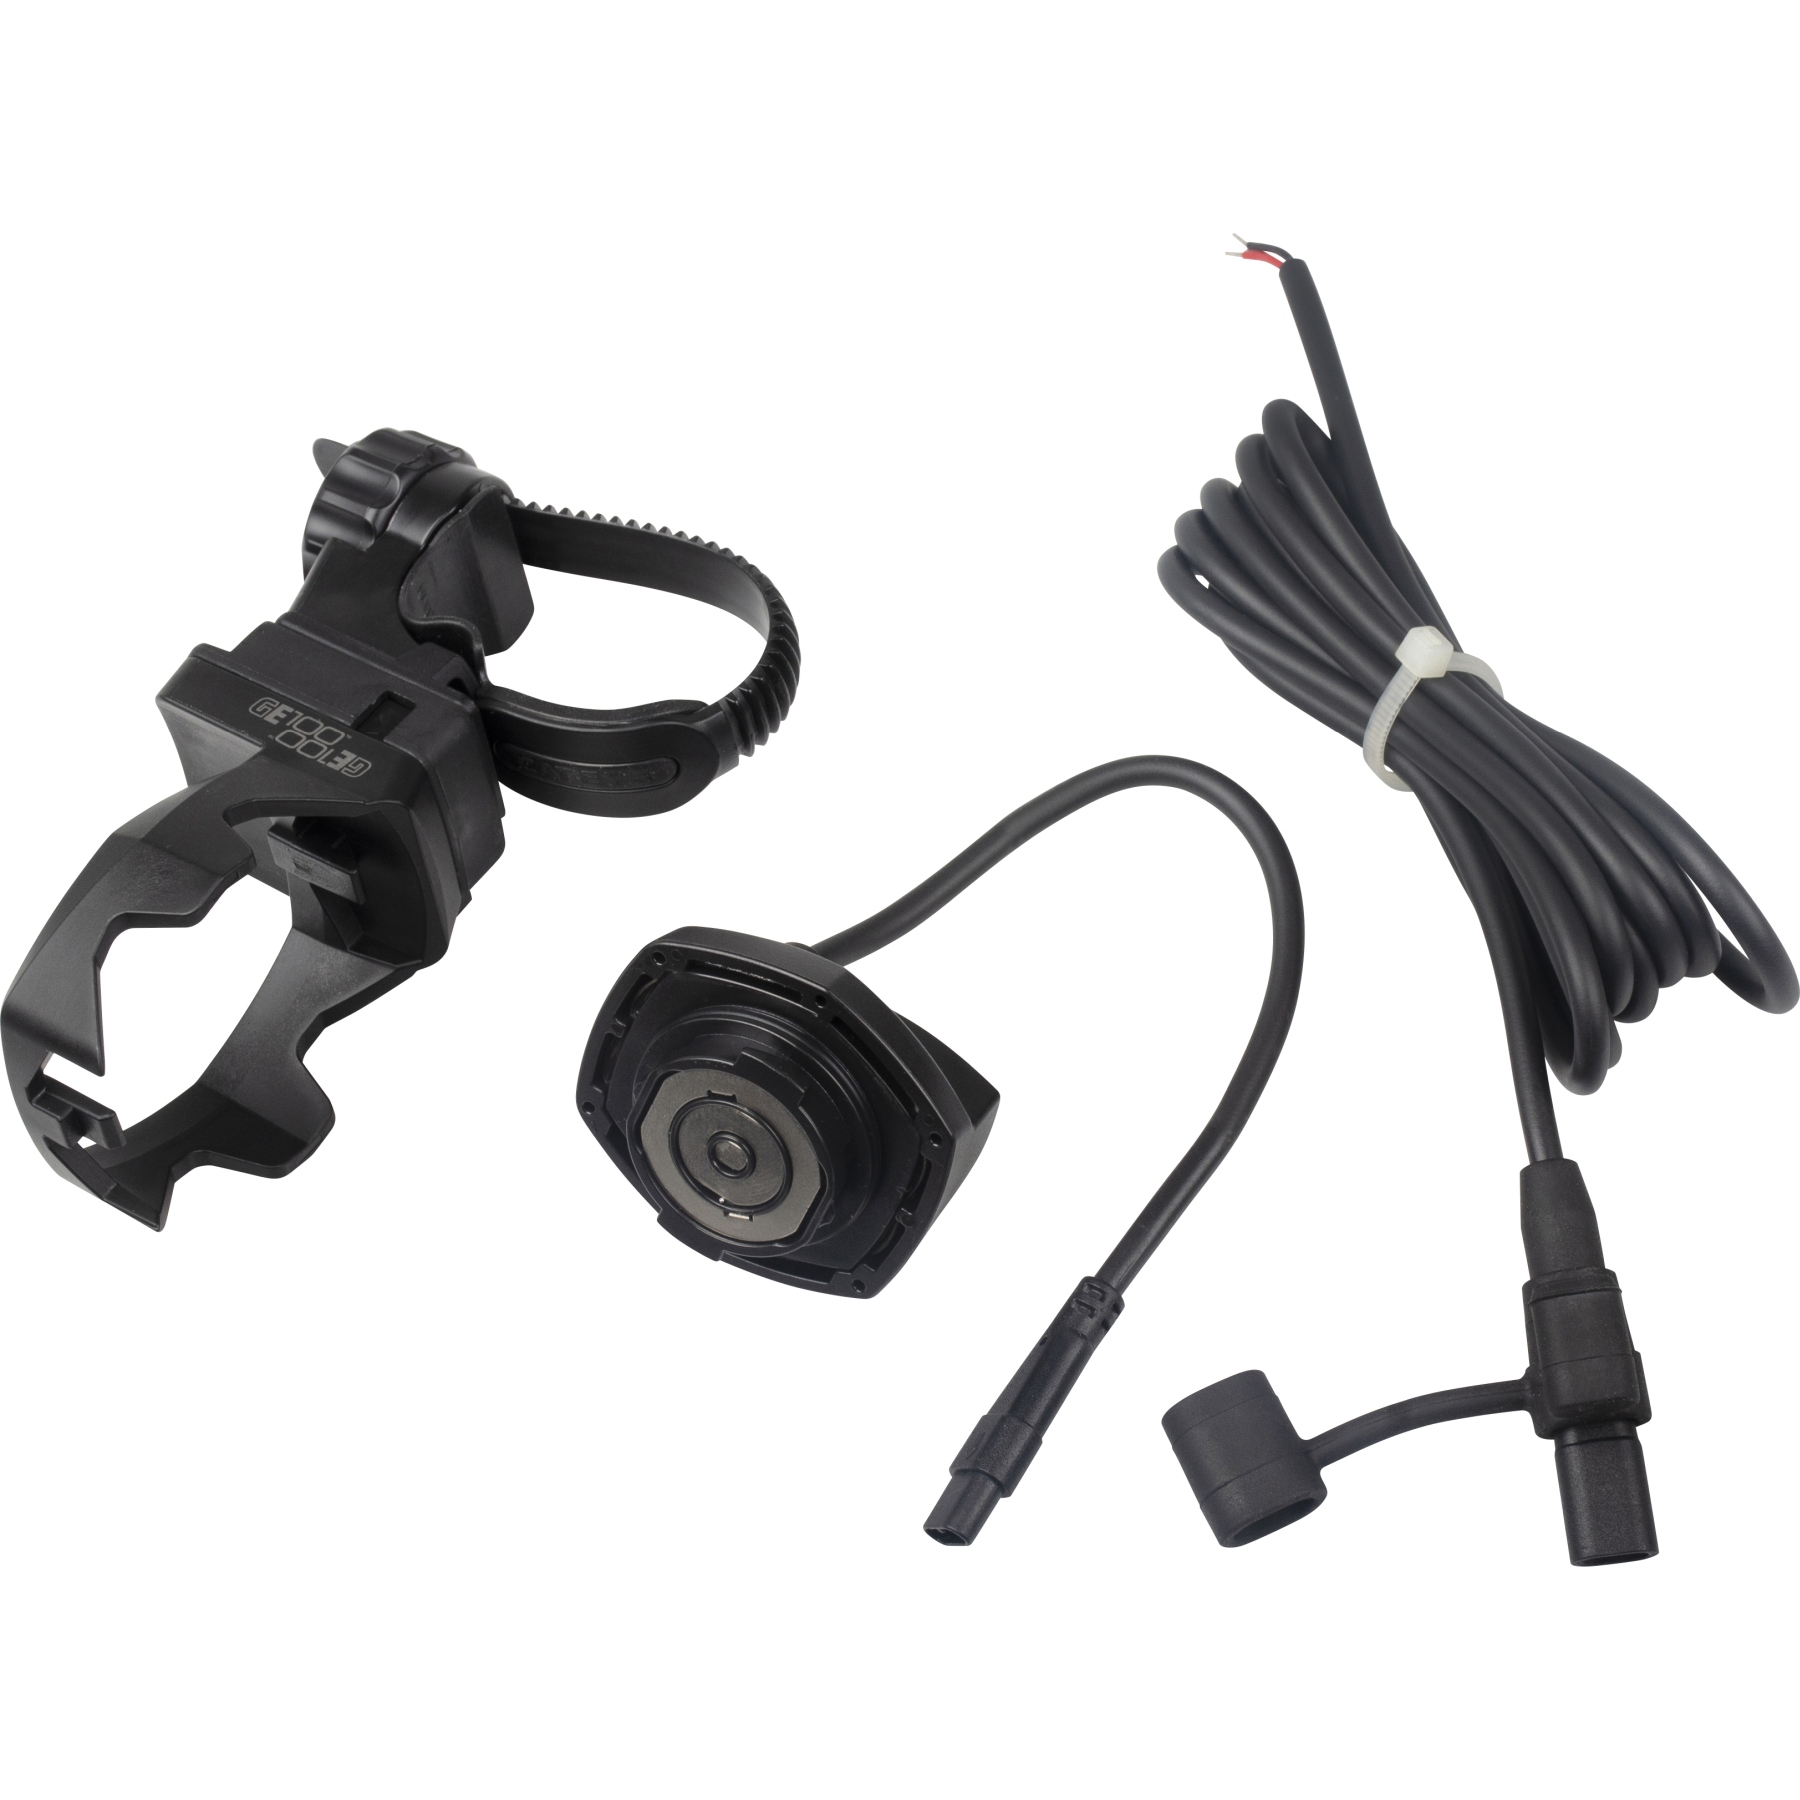 Produktbild von Cat Eye E-Bike Adapter Kit für Frontlicht GVolt 100 - schwarz